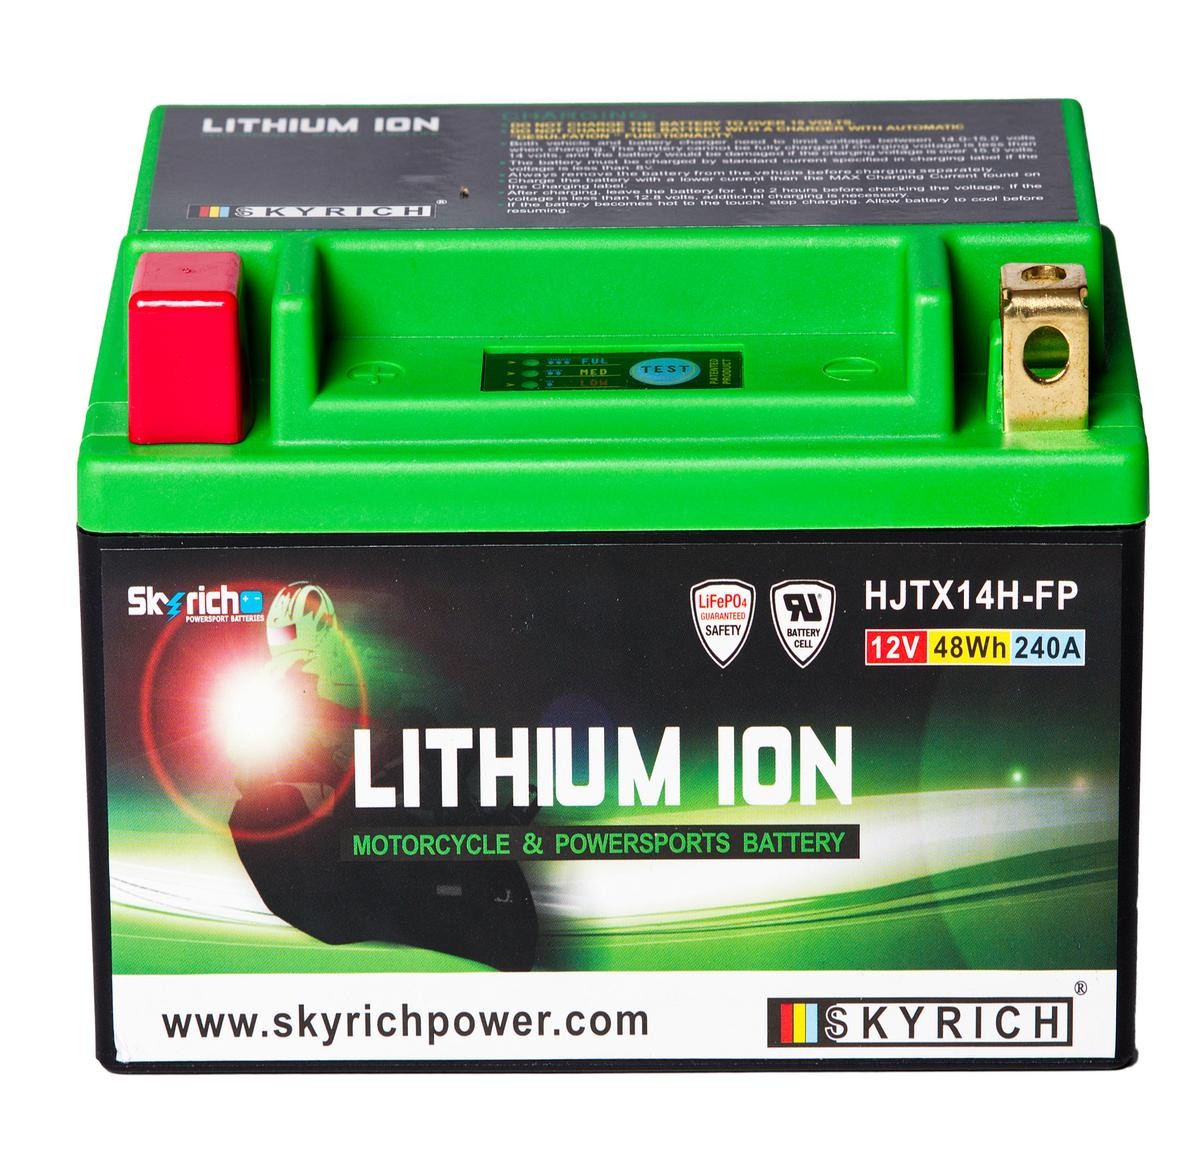 KTM DUKE Batterie 12V 4Ah 240A N Li-Ionen-Batterie SKYRICH LITHIUM ION HJTX14H-FP